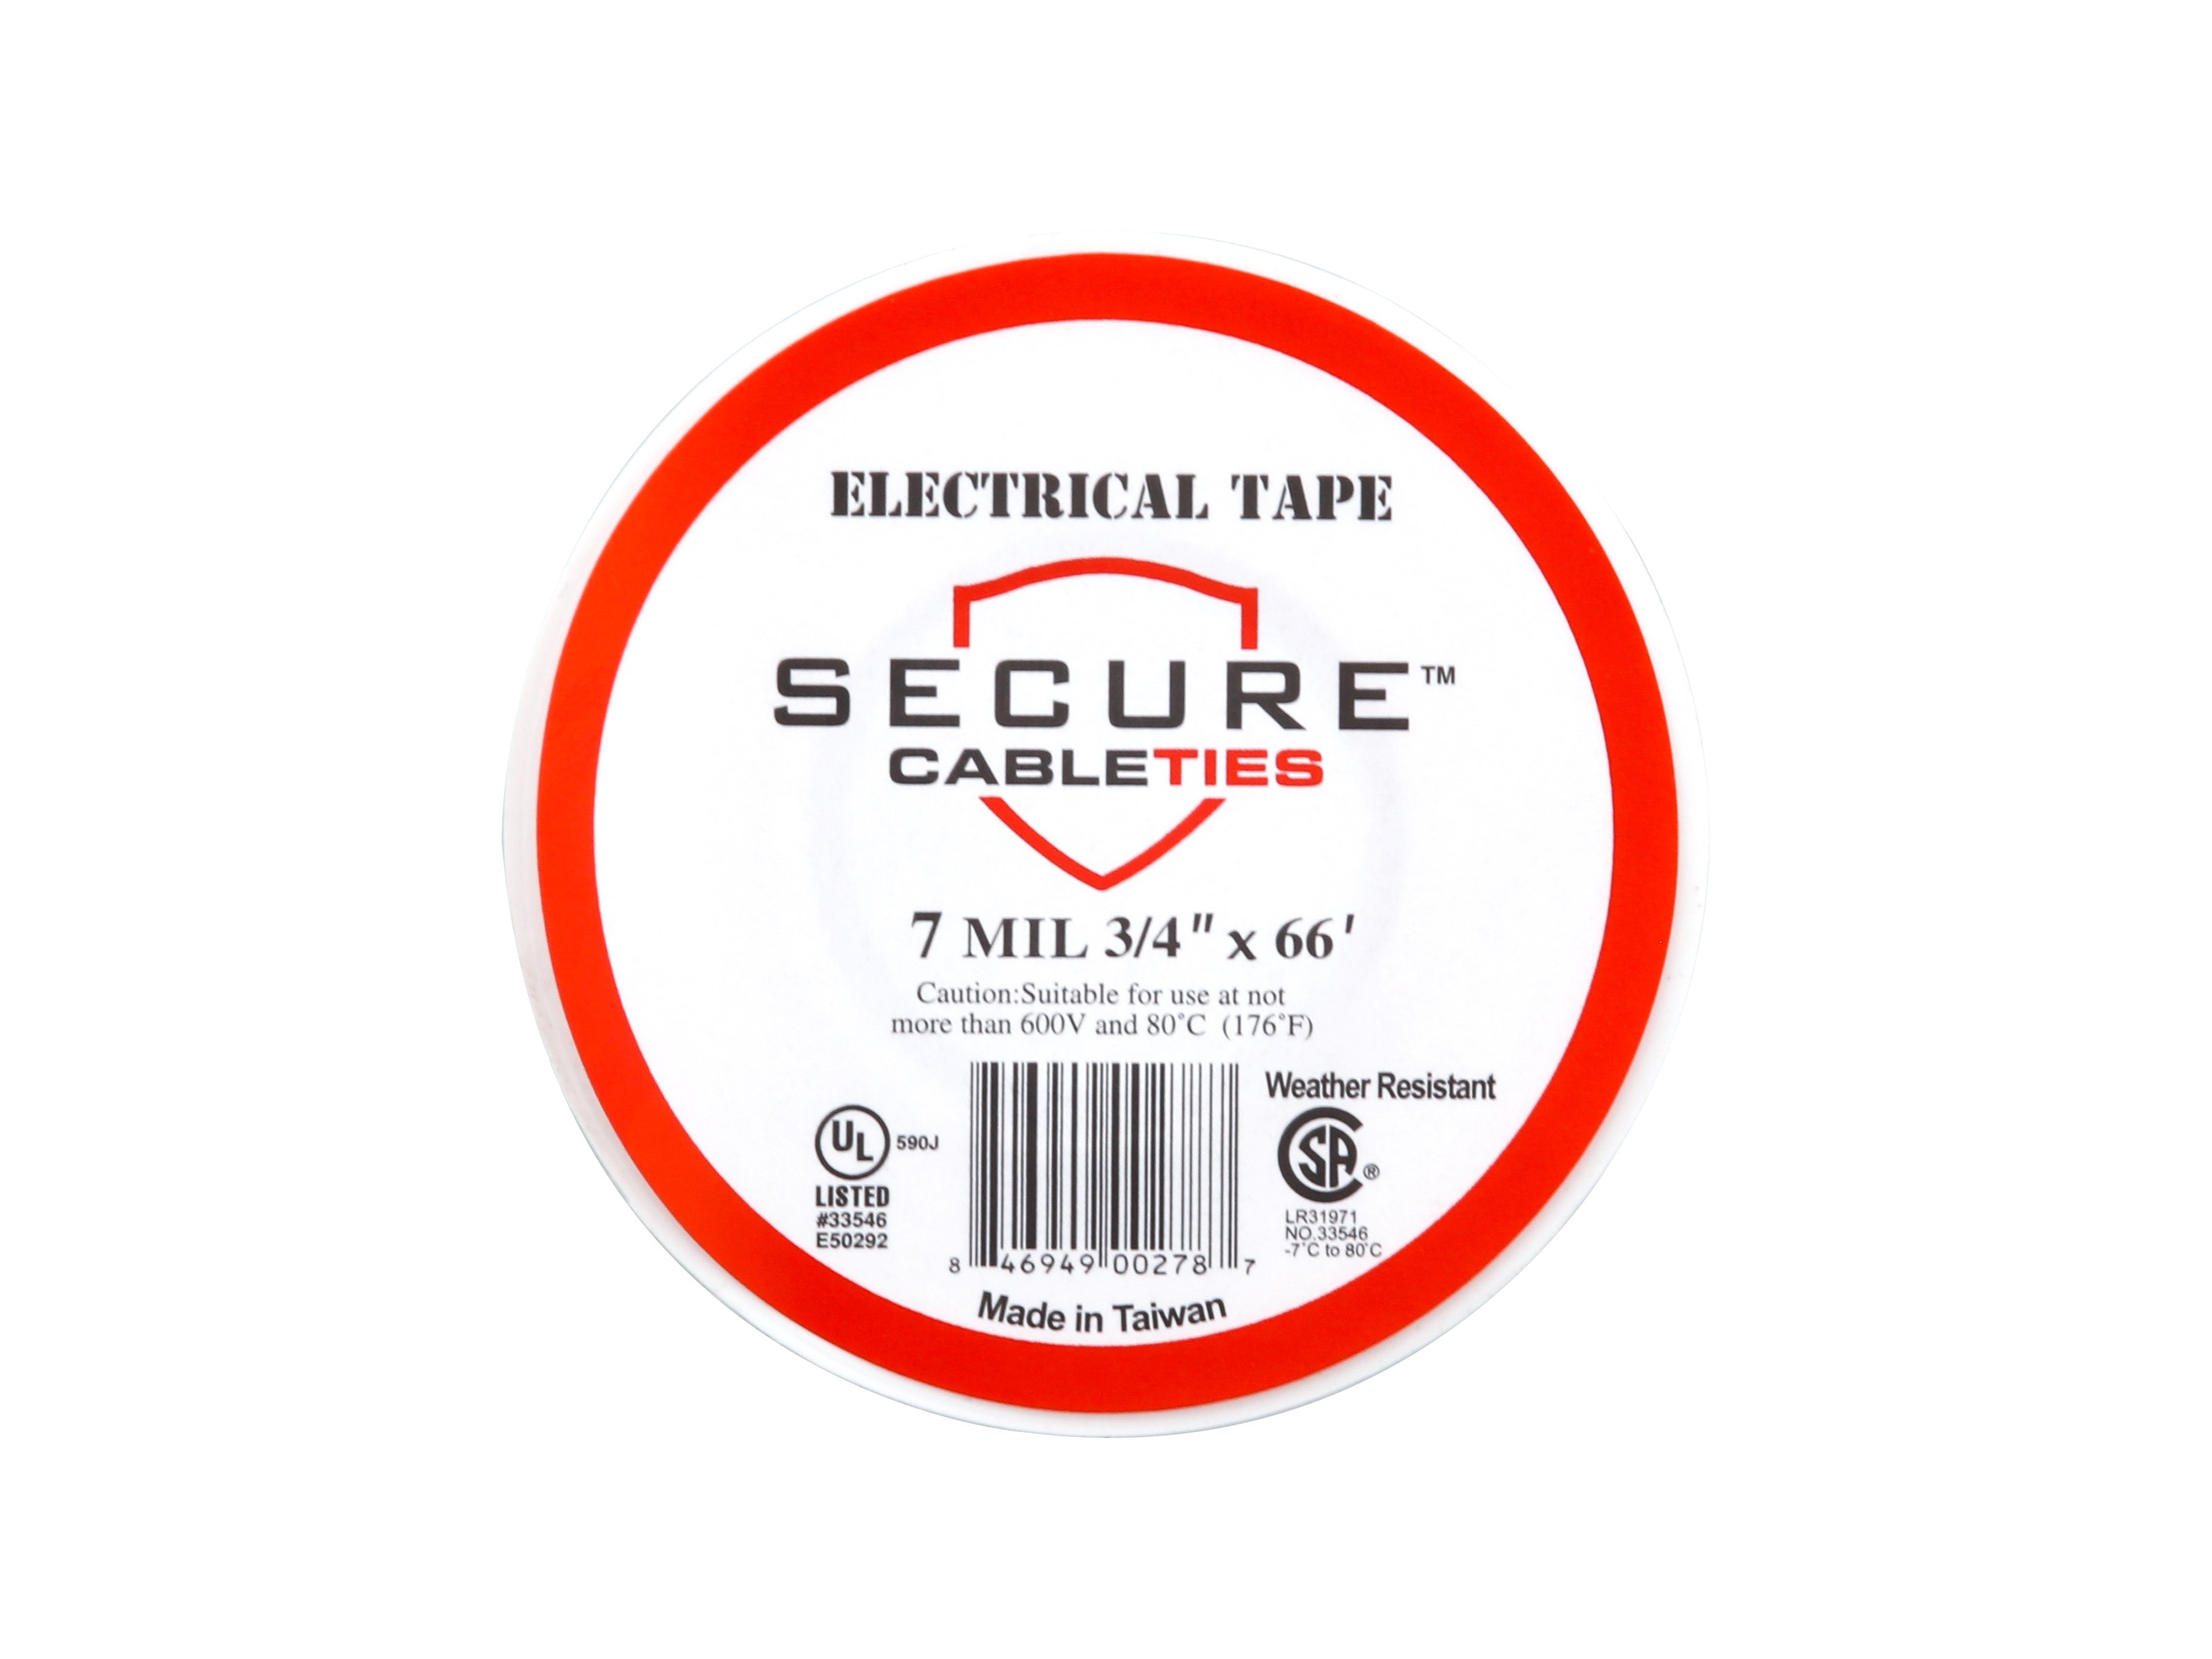 Scotch® Dry Erase Tape, 1905R-DE-EFS, white, 1.88 in x 5 yd (48 mm x 4.57  m)